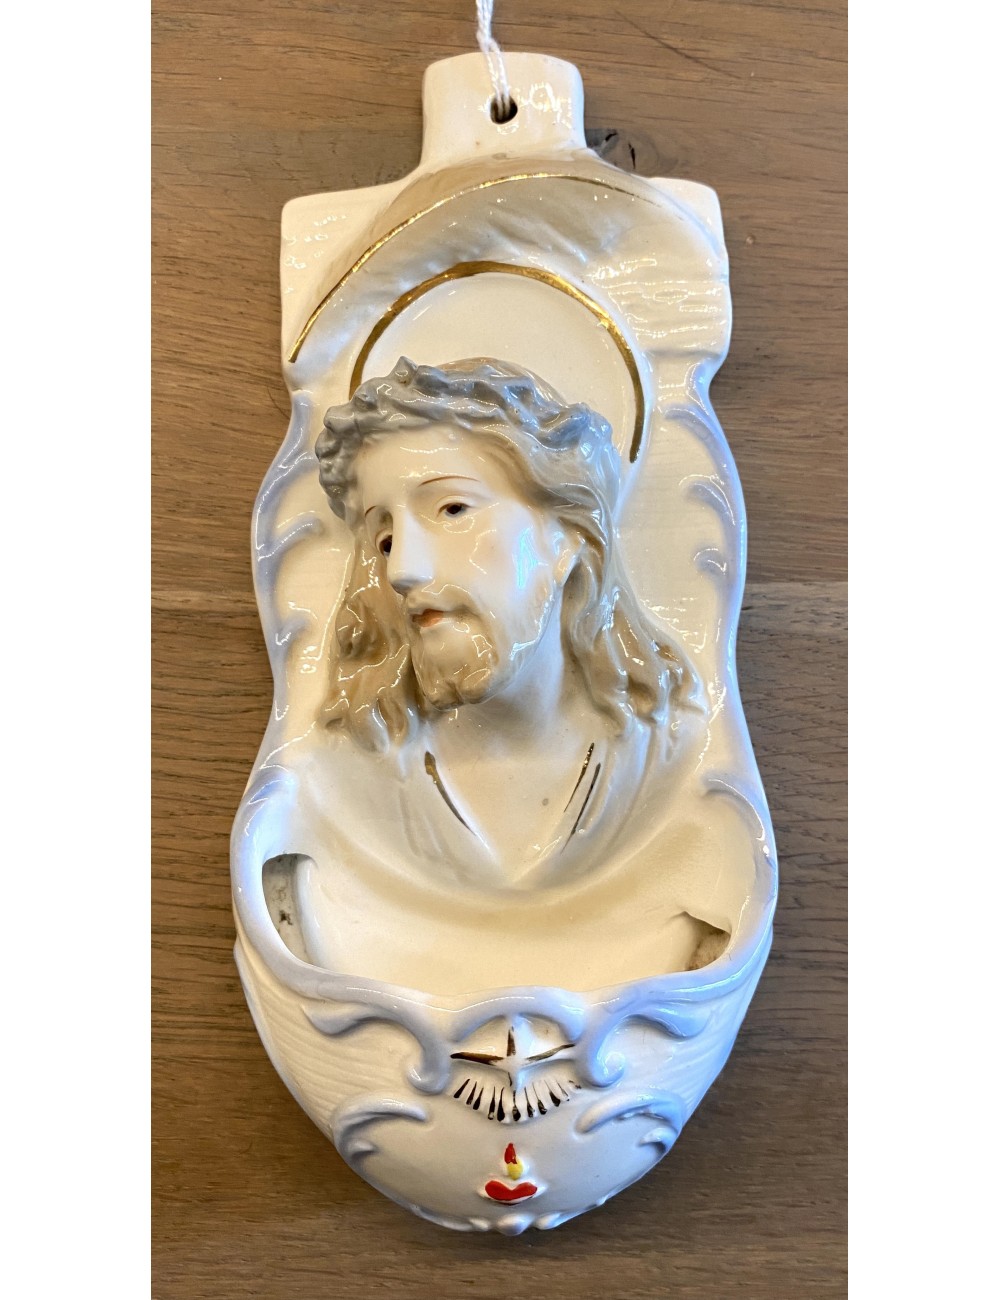 Wijwaterbakje - aardewerk - hangmodel - met sticker op achterkant: Sphinx - afbeelding van Jezus